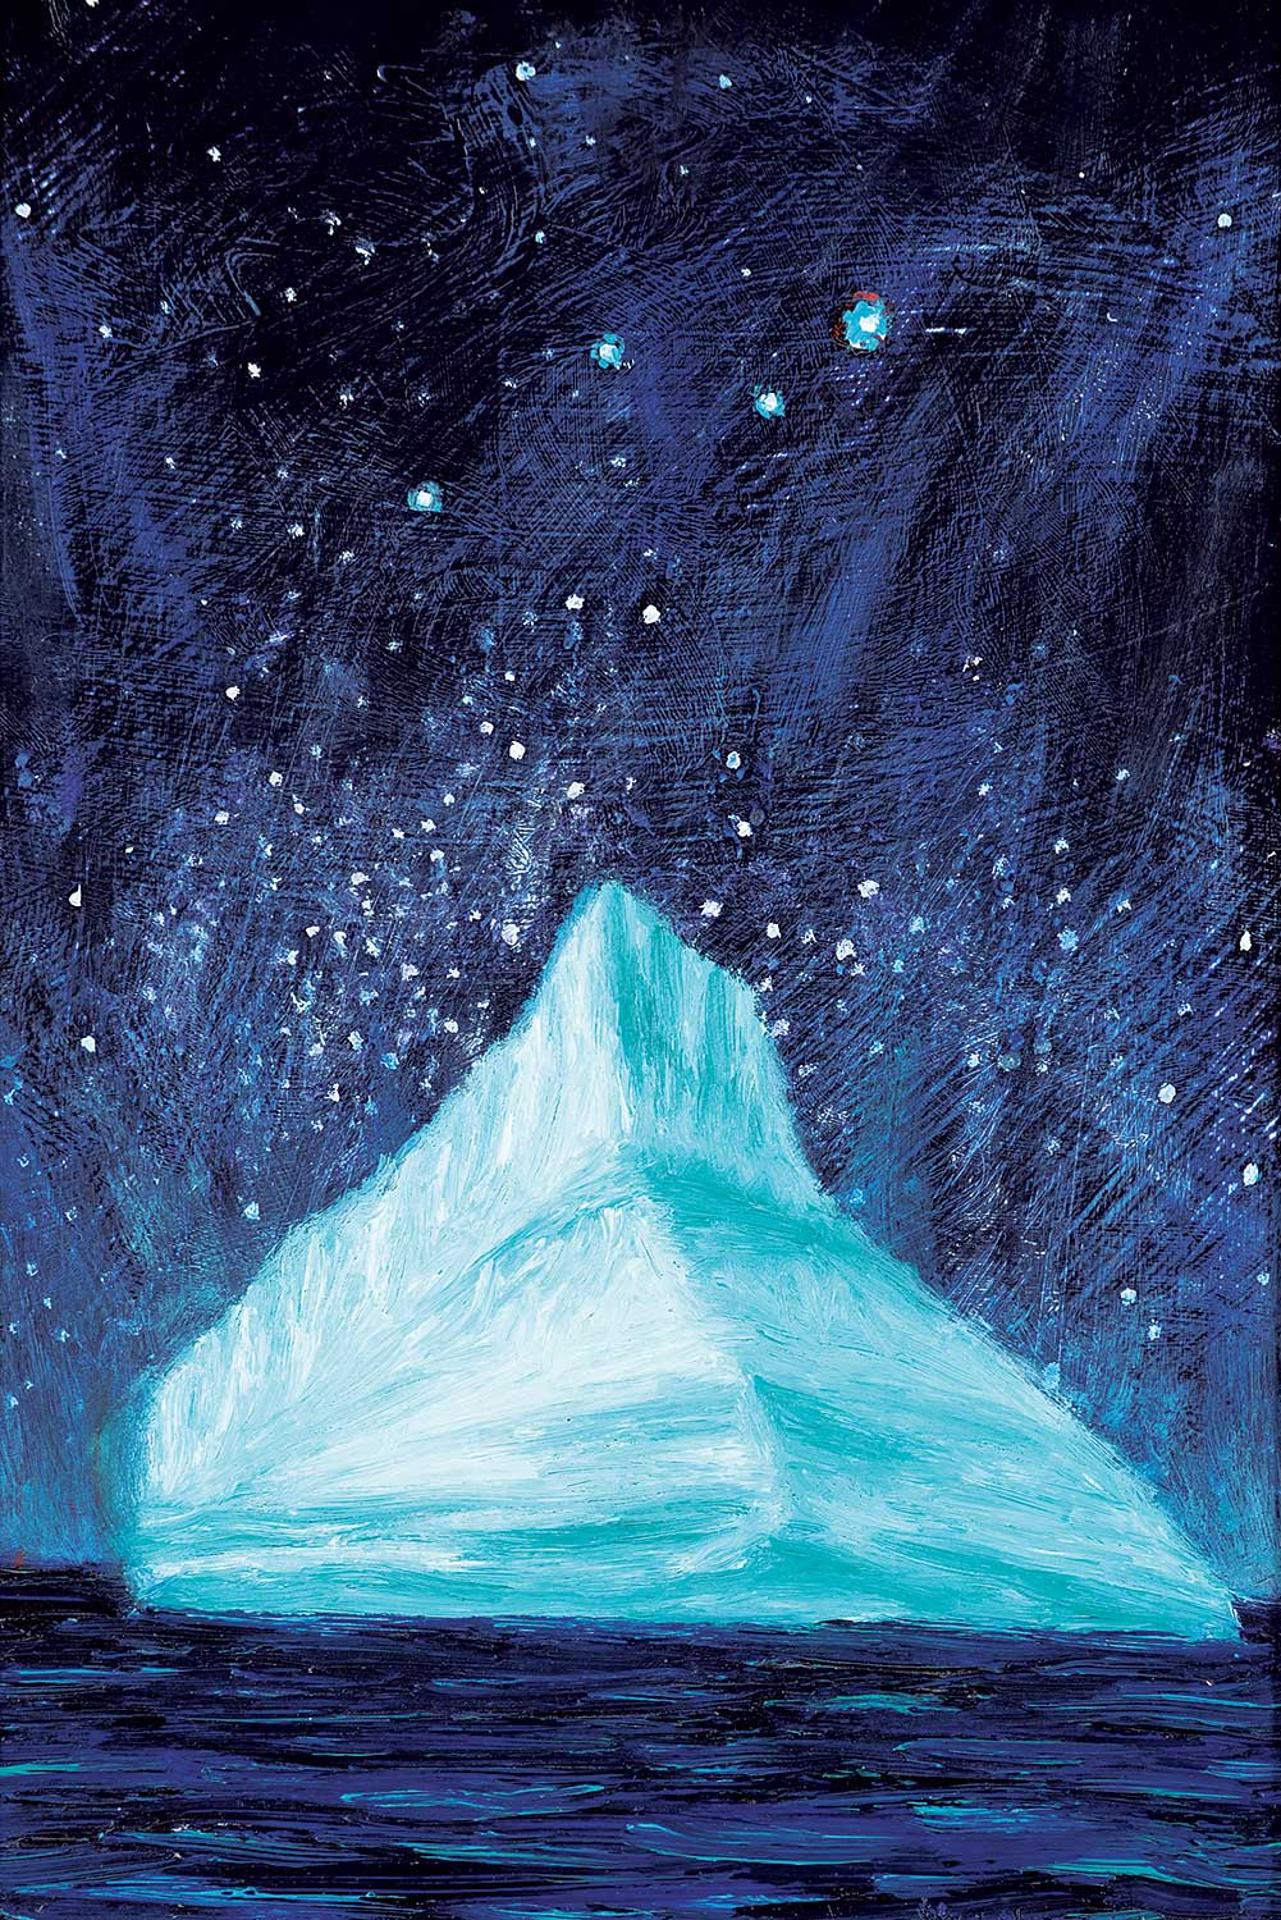 Dan E. Hudson (1959) - Iceberg